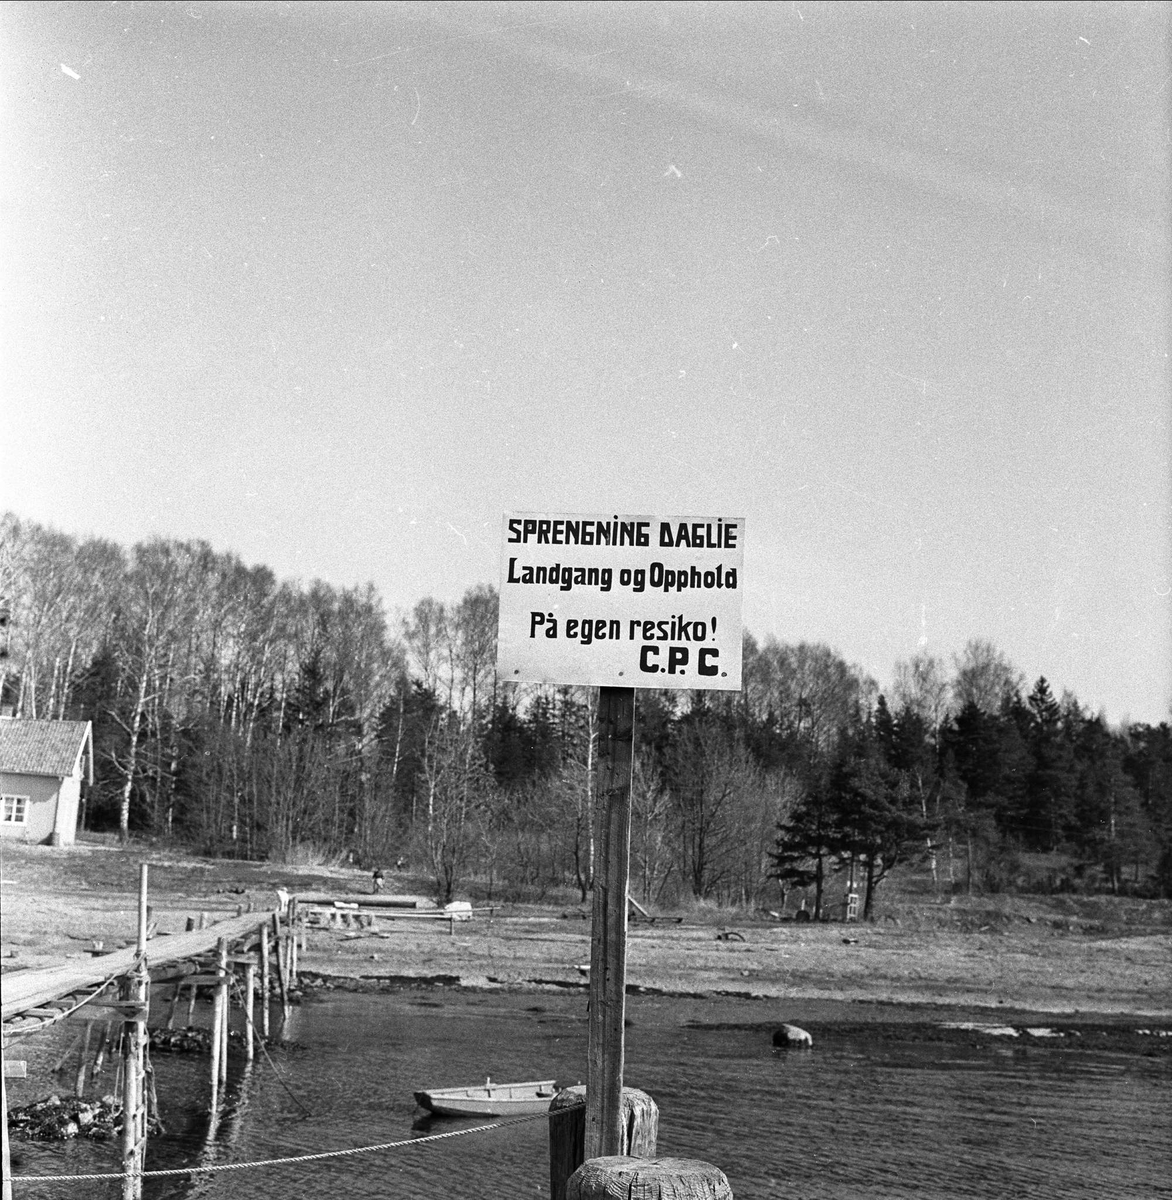 Usikkert om dette er fra Tokke i Telemark. Skilt med advarsel om sprengning.
Pir ut i vannet med robåt. Fotografert i 1957.